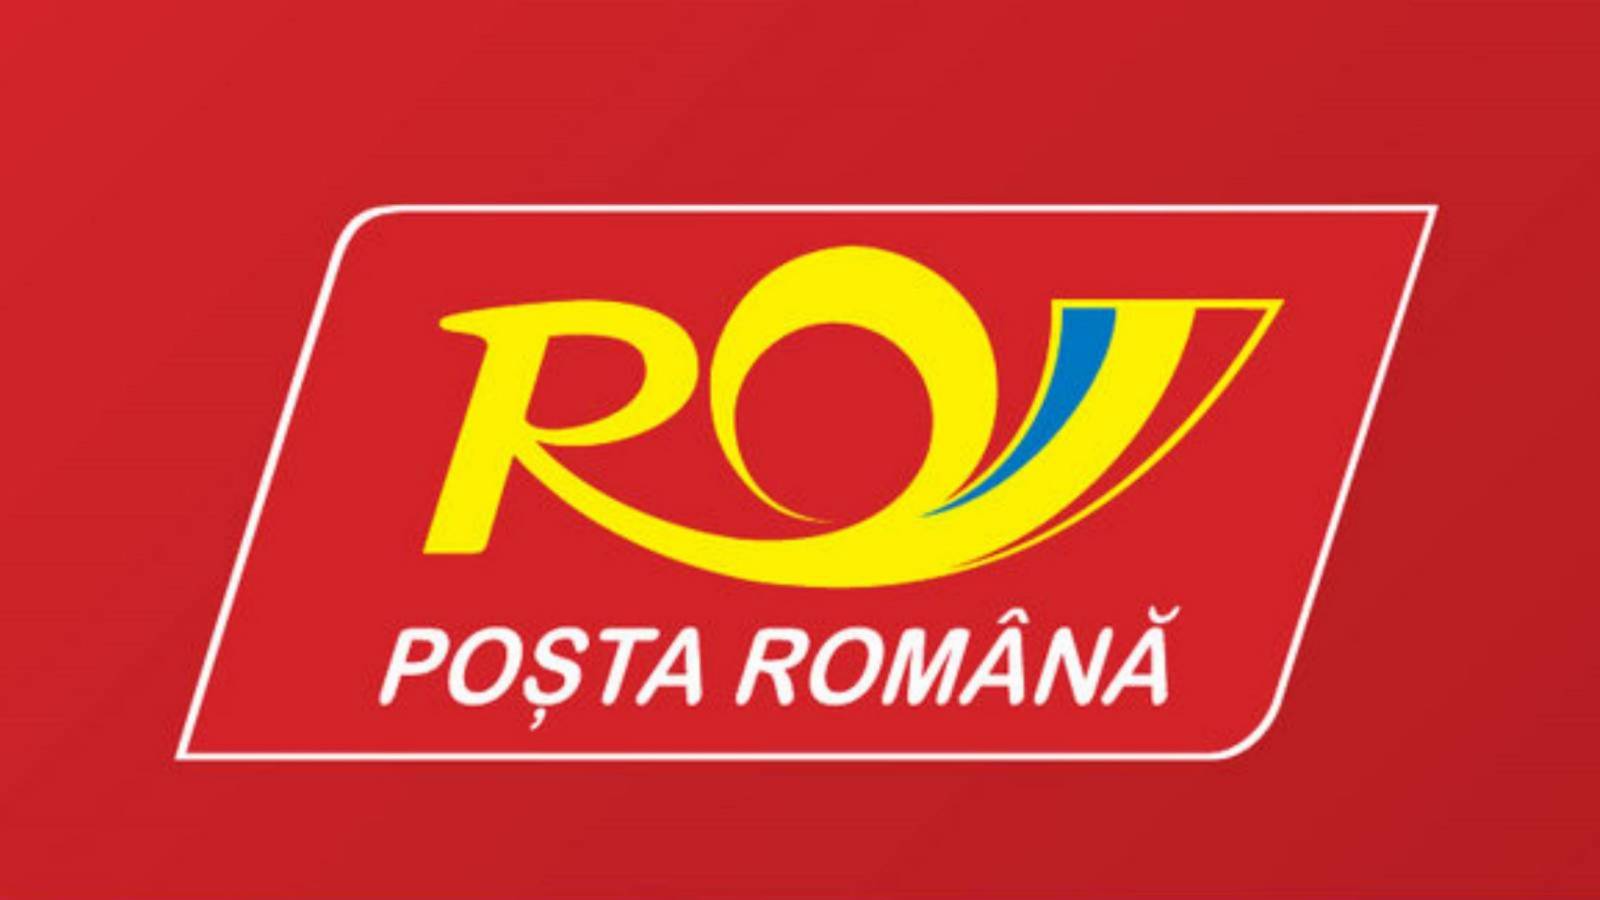 Distrito postal rumano